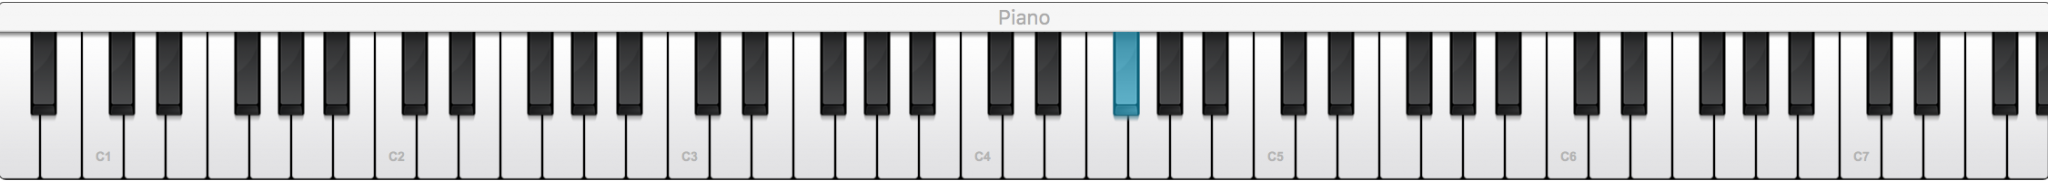 Piano controller